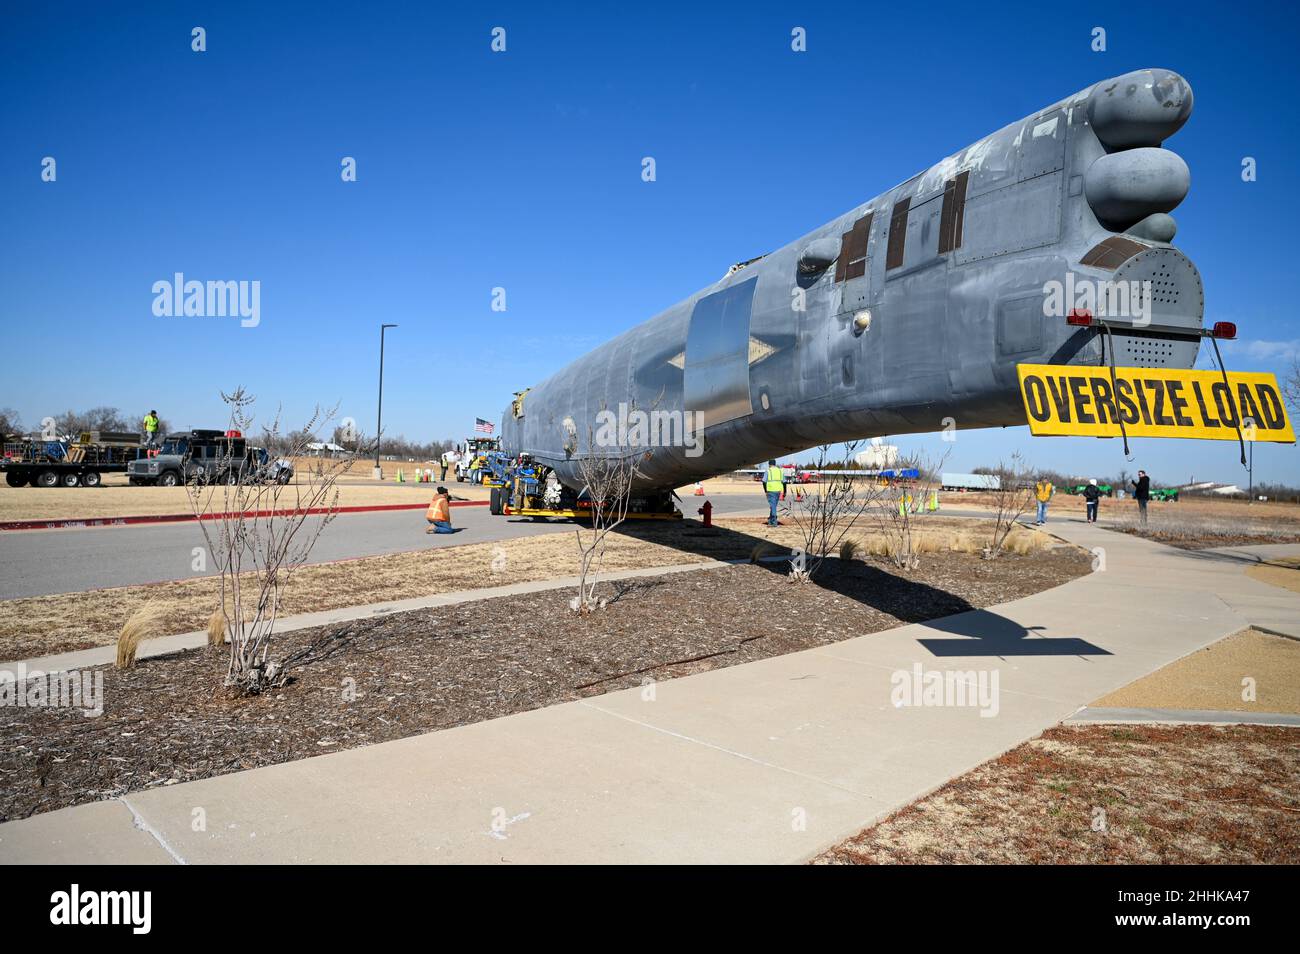 B-52 la queue de StratoFortress numéro 61-0009, surnommée “dommage Inc. II”, a terminé son voyage de près de 1 500 milles de l'Arizona à l'Oklahoma le 22 janvier 2022, lorsqu'elle est arrivée à l'usine Boeing près de la base aérienne de Tinker.Le fuselage sera remonté avec l'aile gauche et l'avion servira de modèle pour les efforts de modernisation de la flotte B-52 menés par la Force aérienne.(Photo de la Force aérienne par Mark Hybers) Banque D'Images